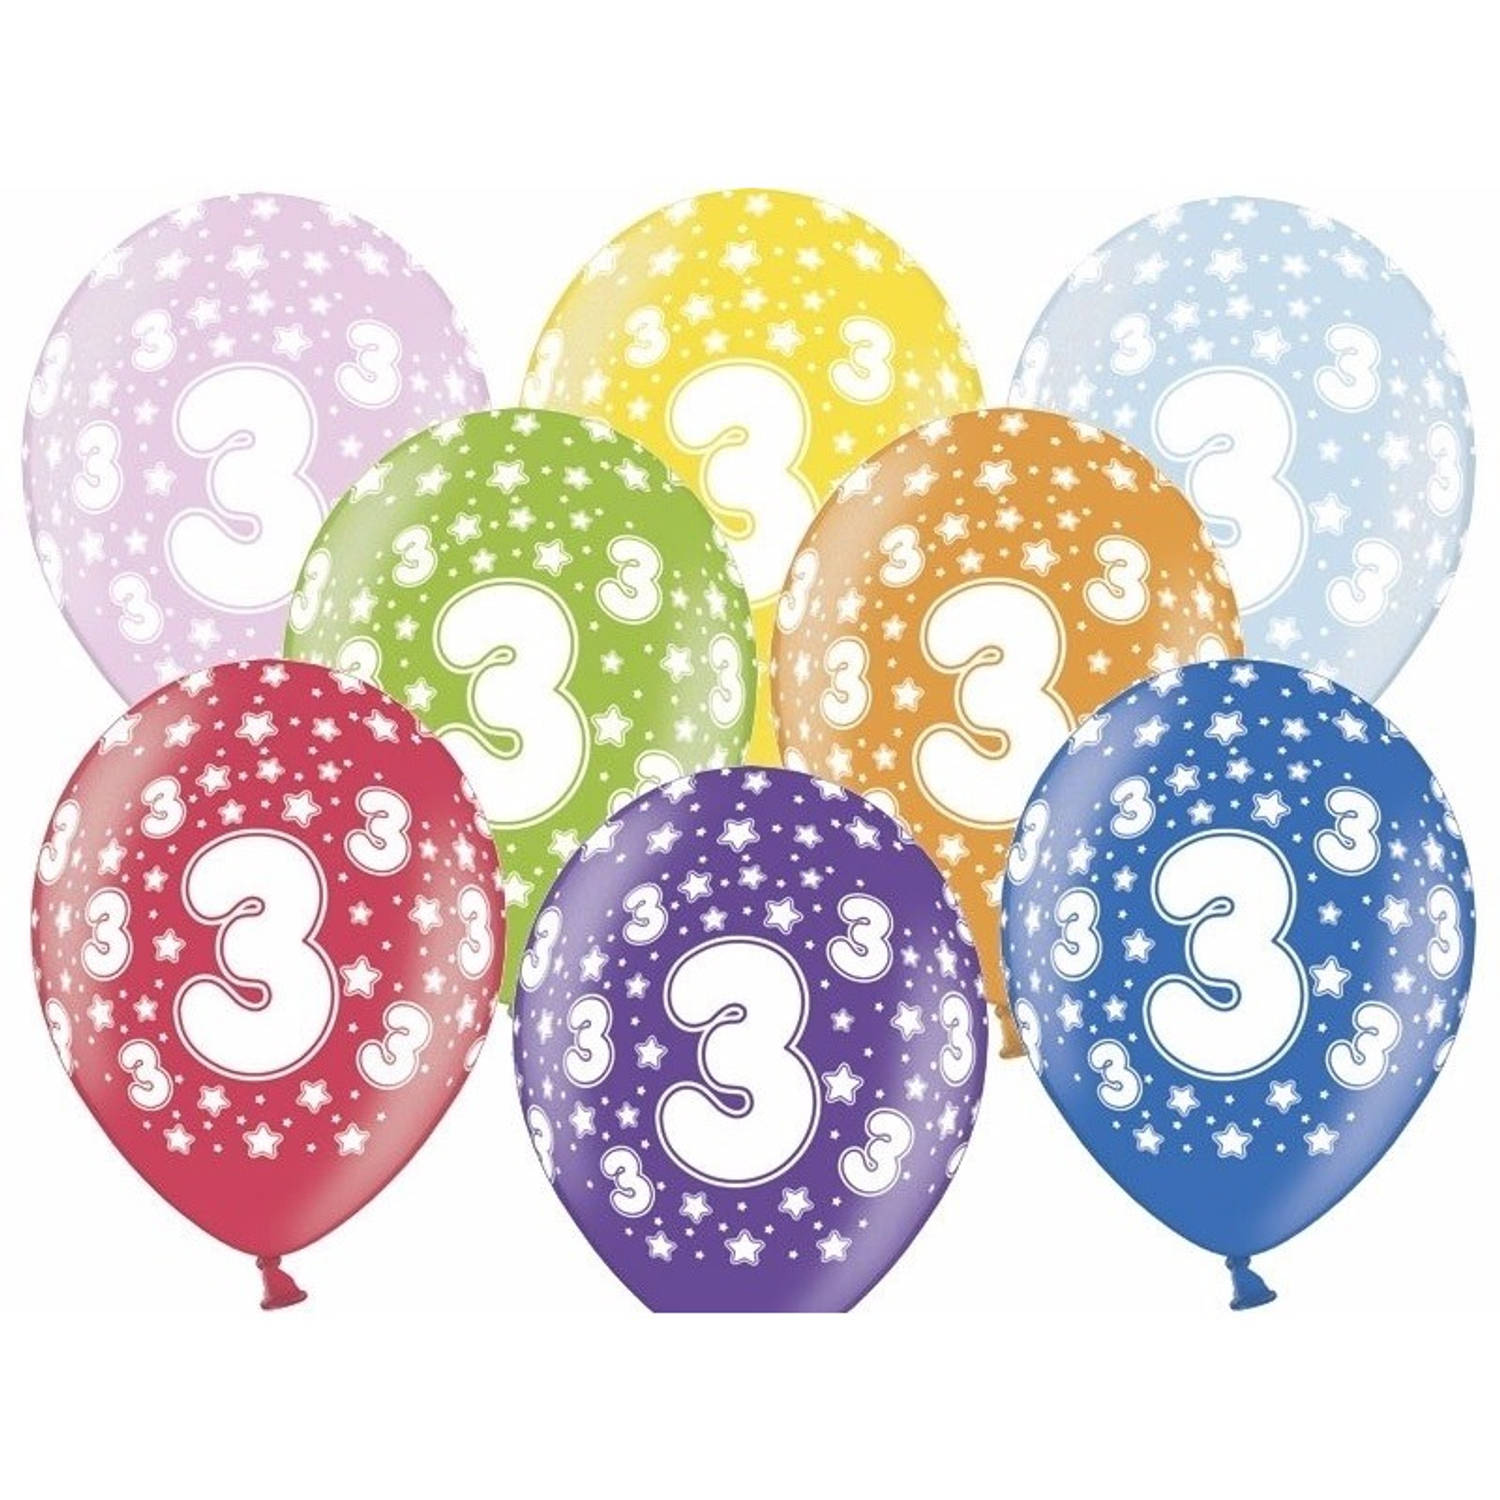 12x stuks Ballonnen 3 jaar thema met sterretjes - Ballonnen